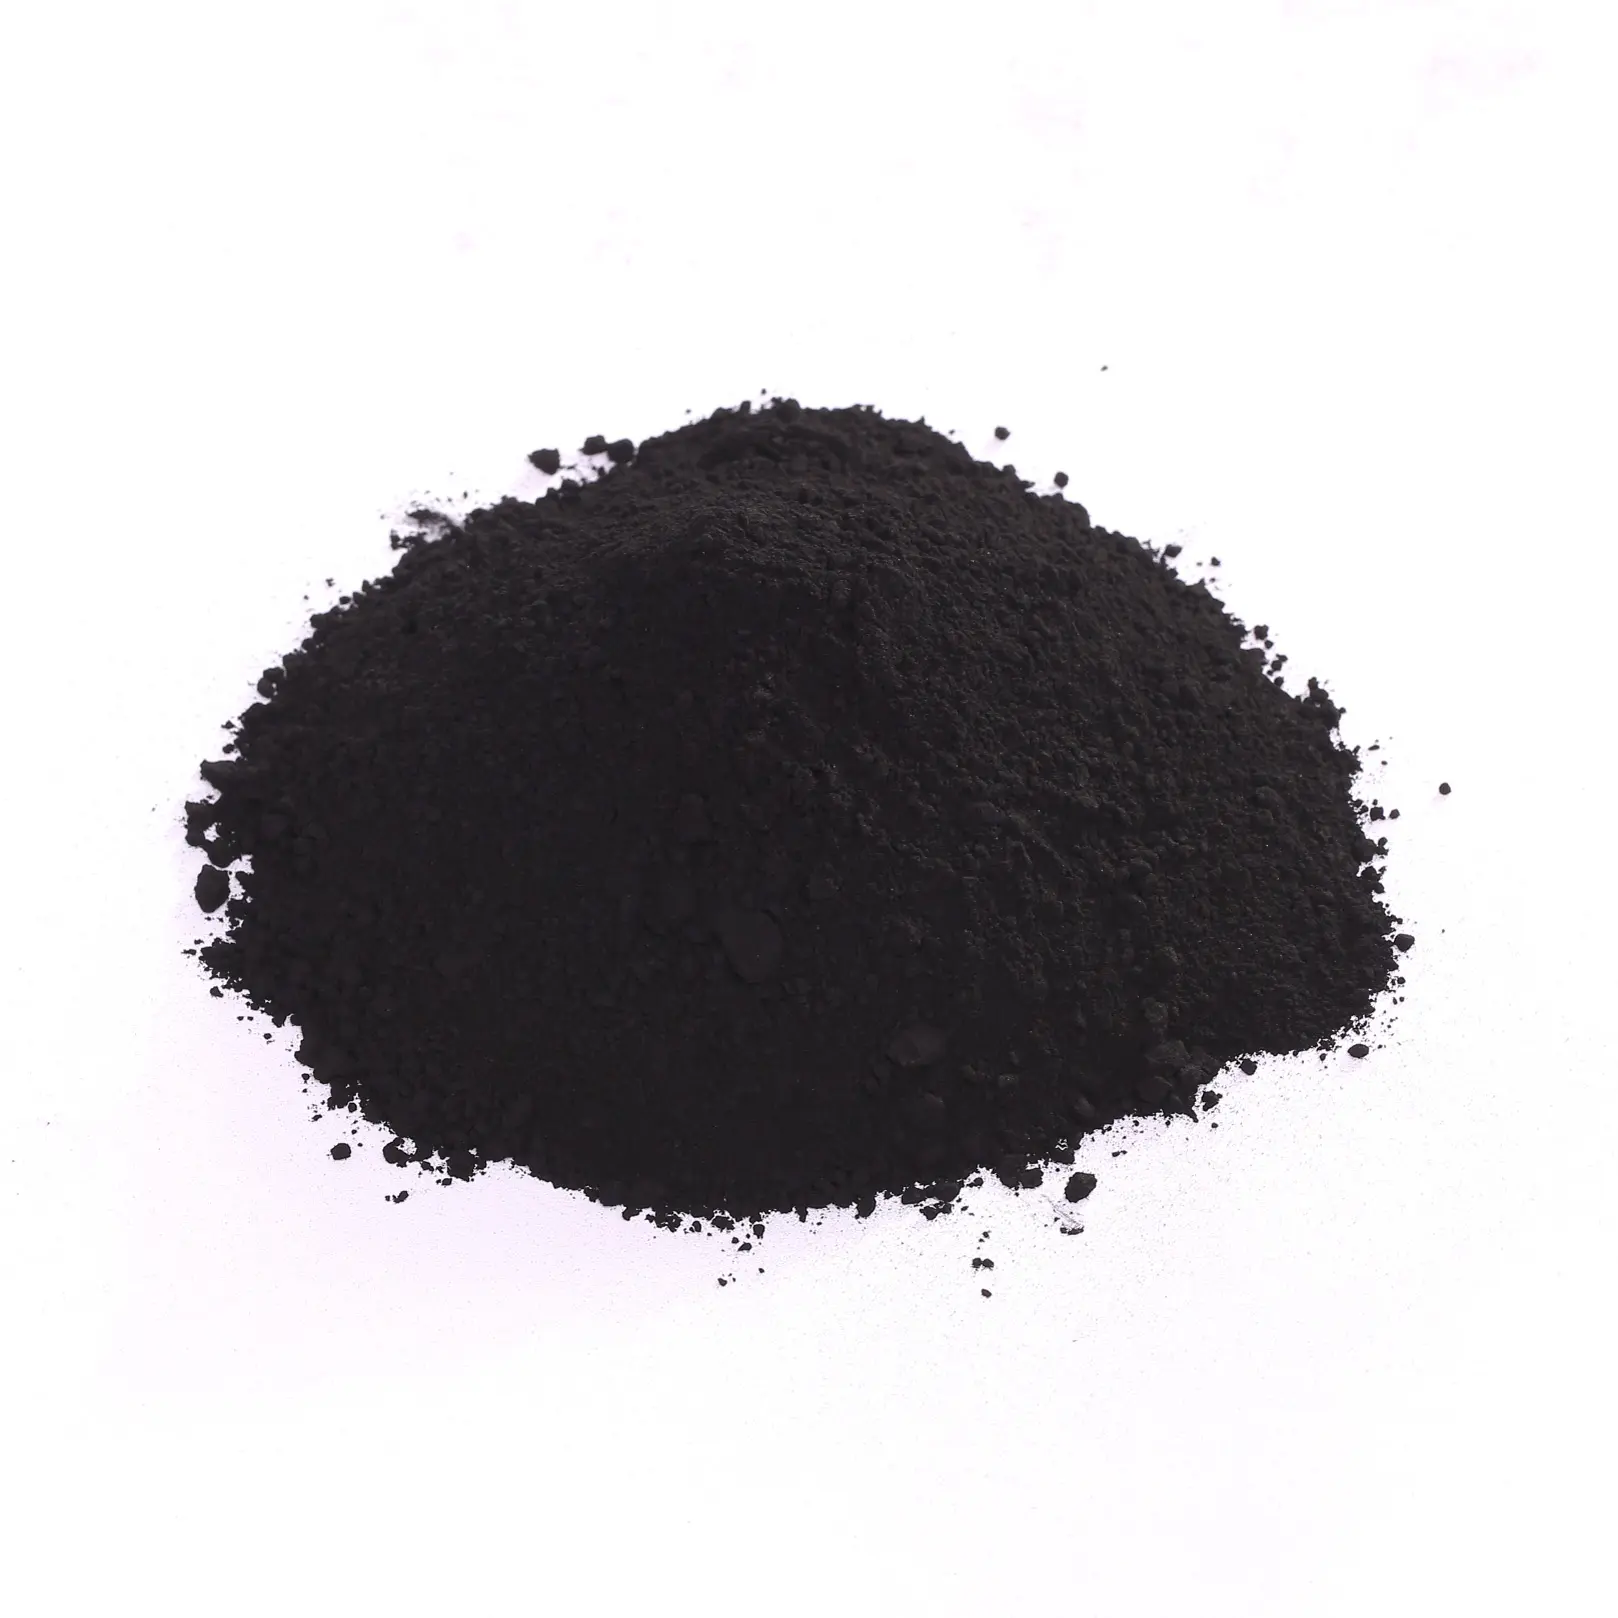 Сахарная смазка пищевые добавки Обесцвечивающий порошок на основе угля с высоким содержанием йода Активированный уголь черный активированный уголь 99% 264-846-4